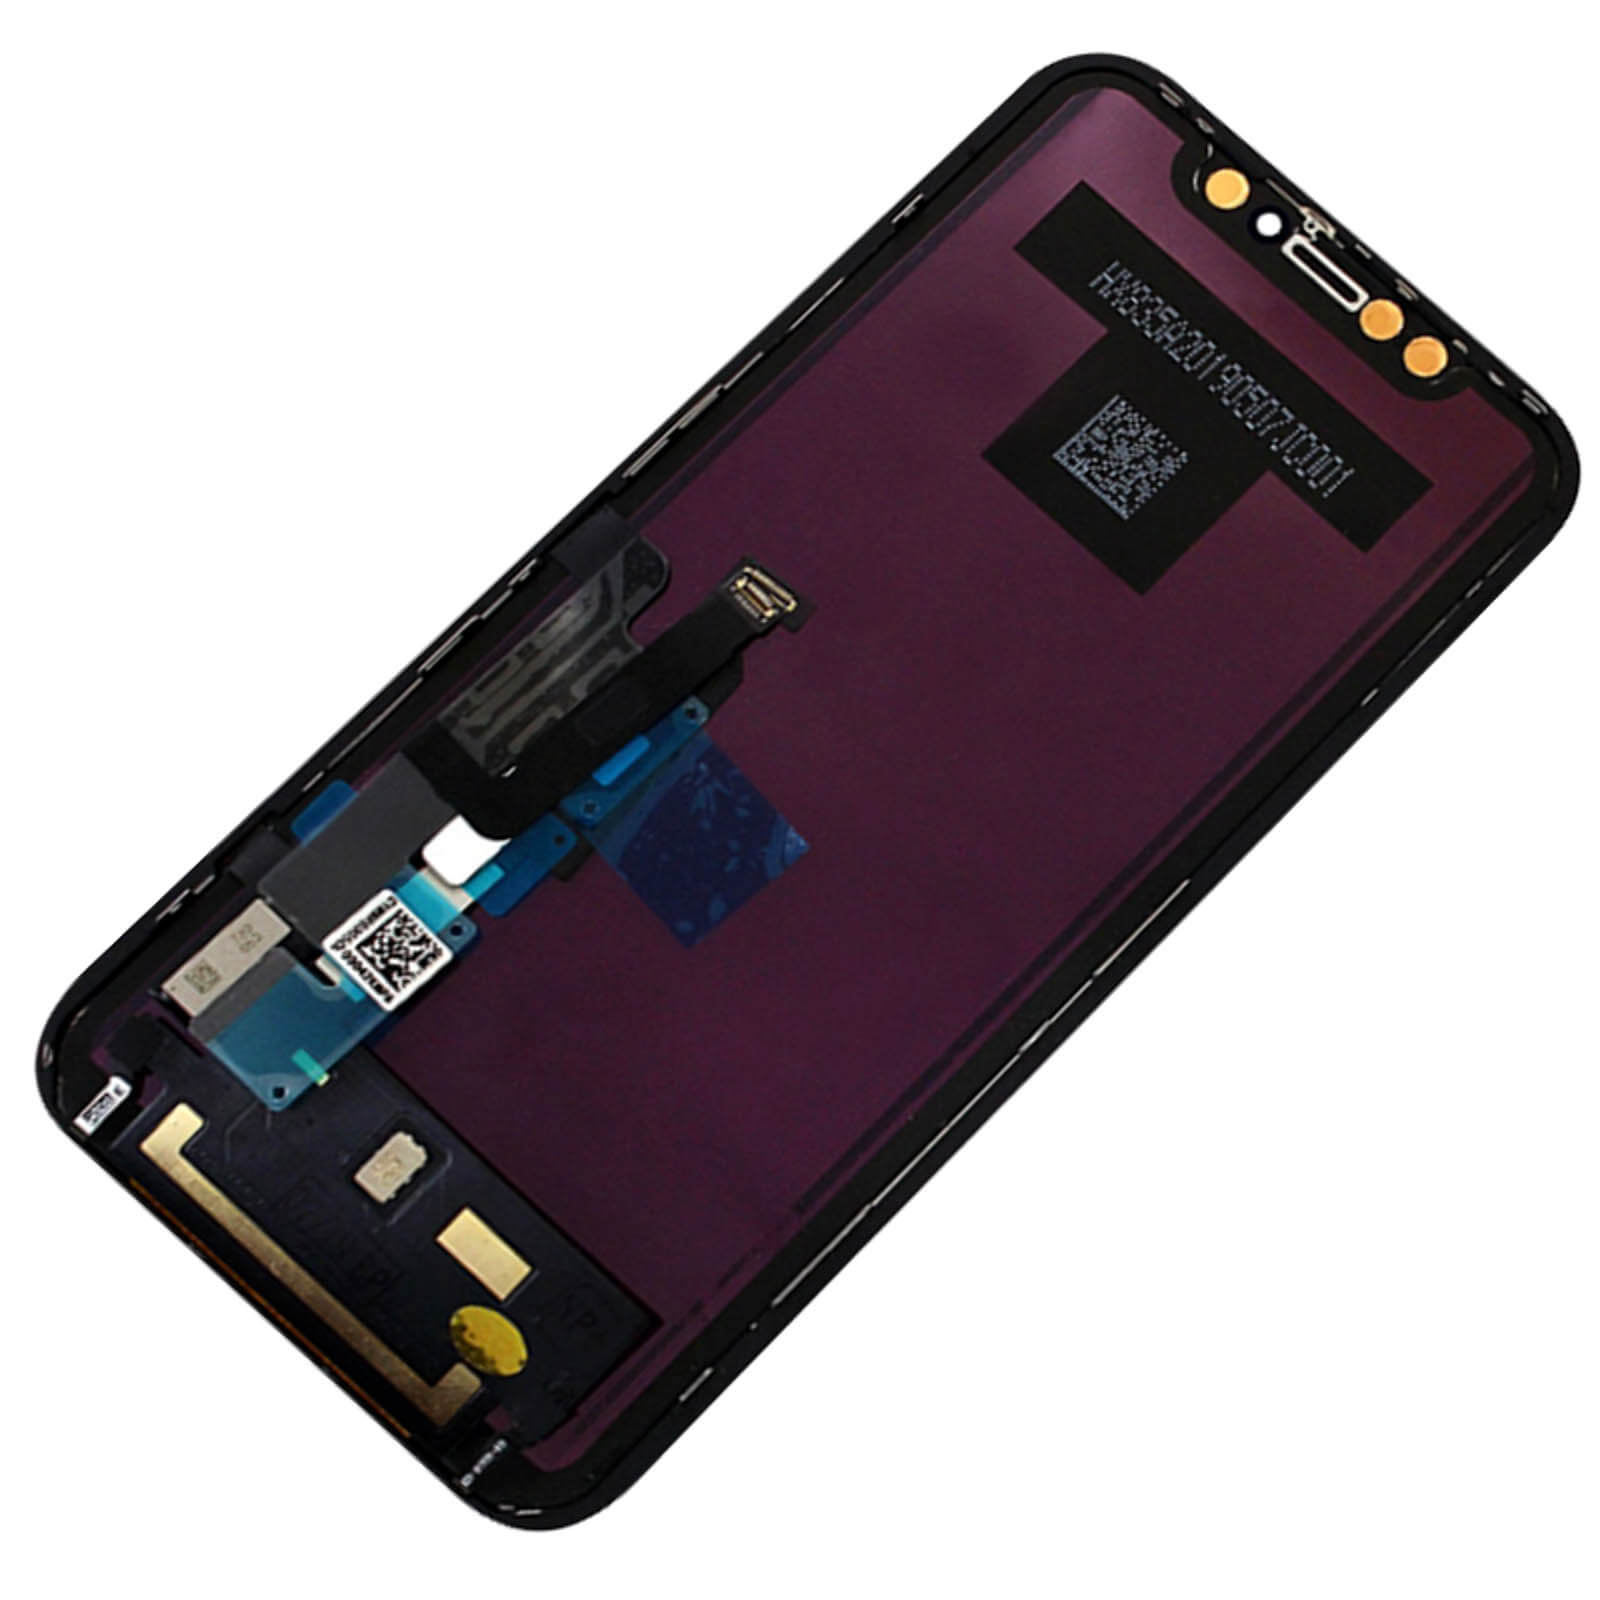 Ecran LCD + Vitre Tactile Apple iPhone XR (Version TFT) Noir